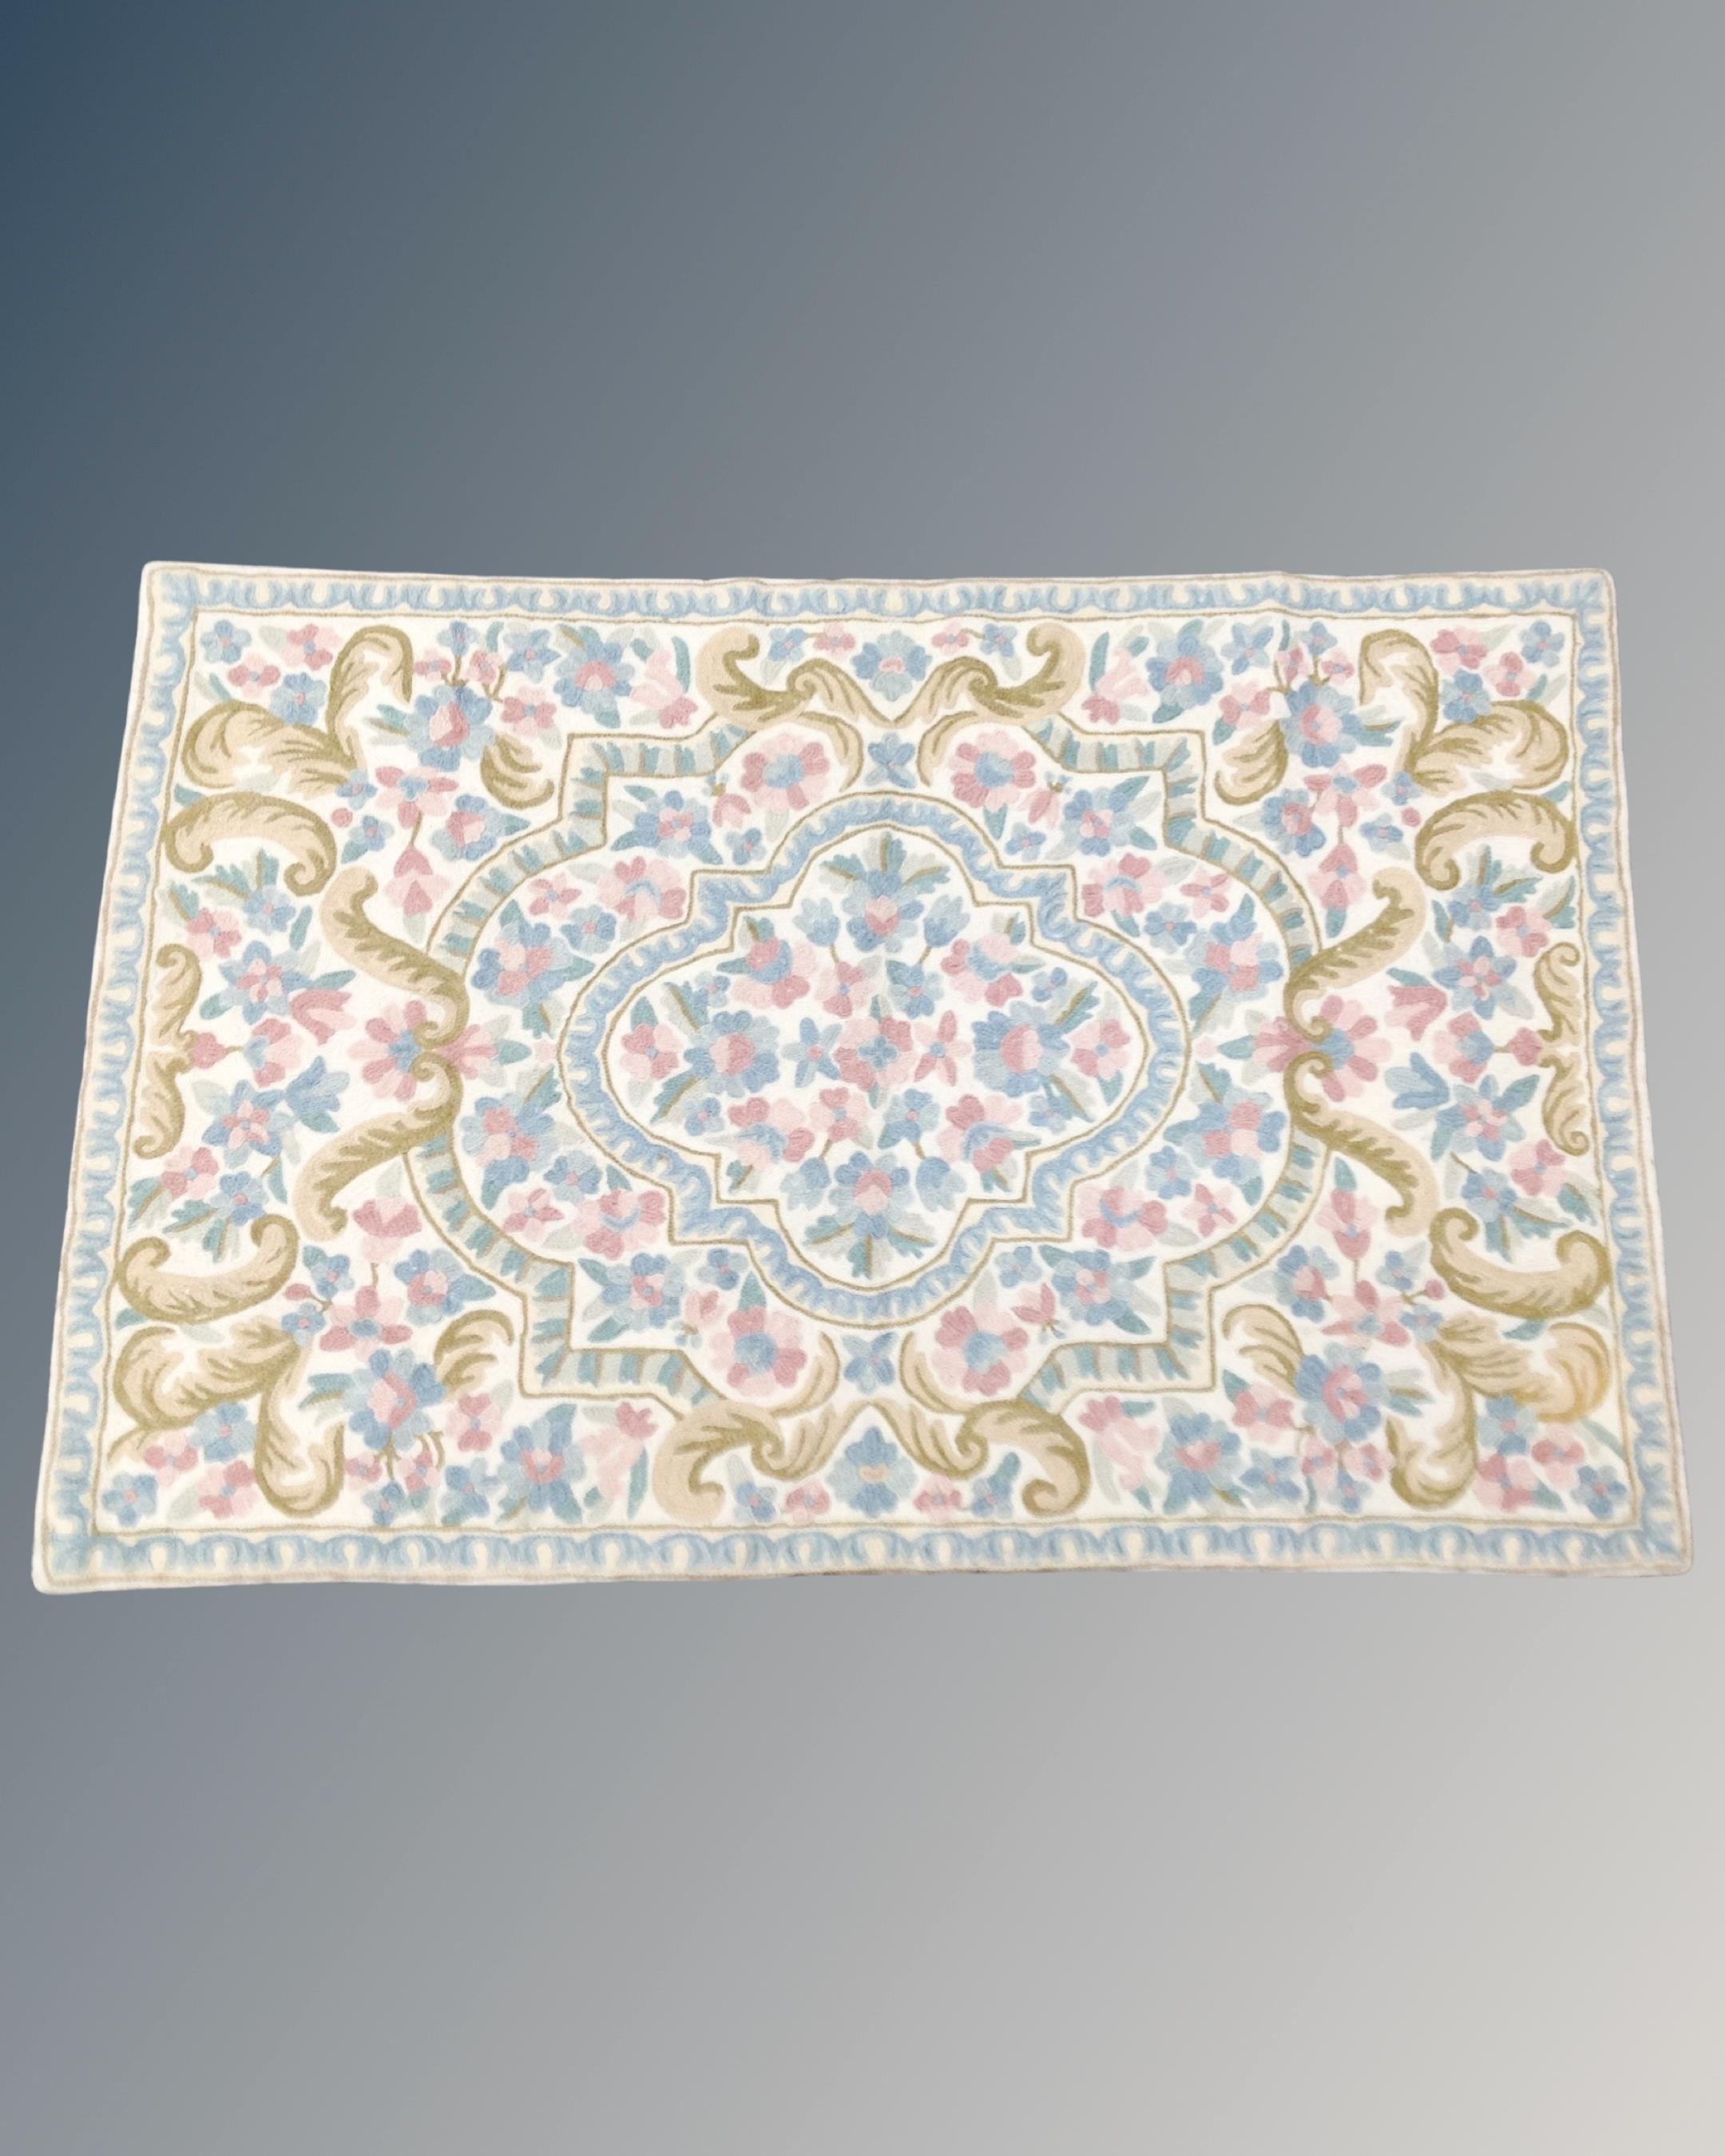 A Kashmiri stitch wool rug 91 cm x 60 cm